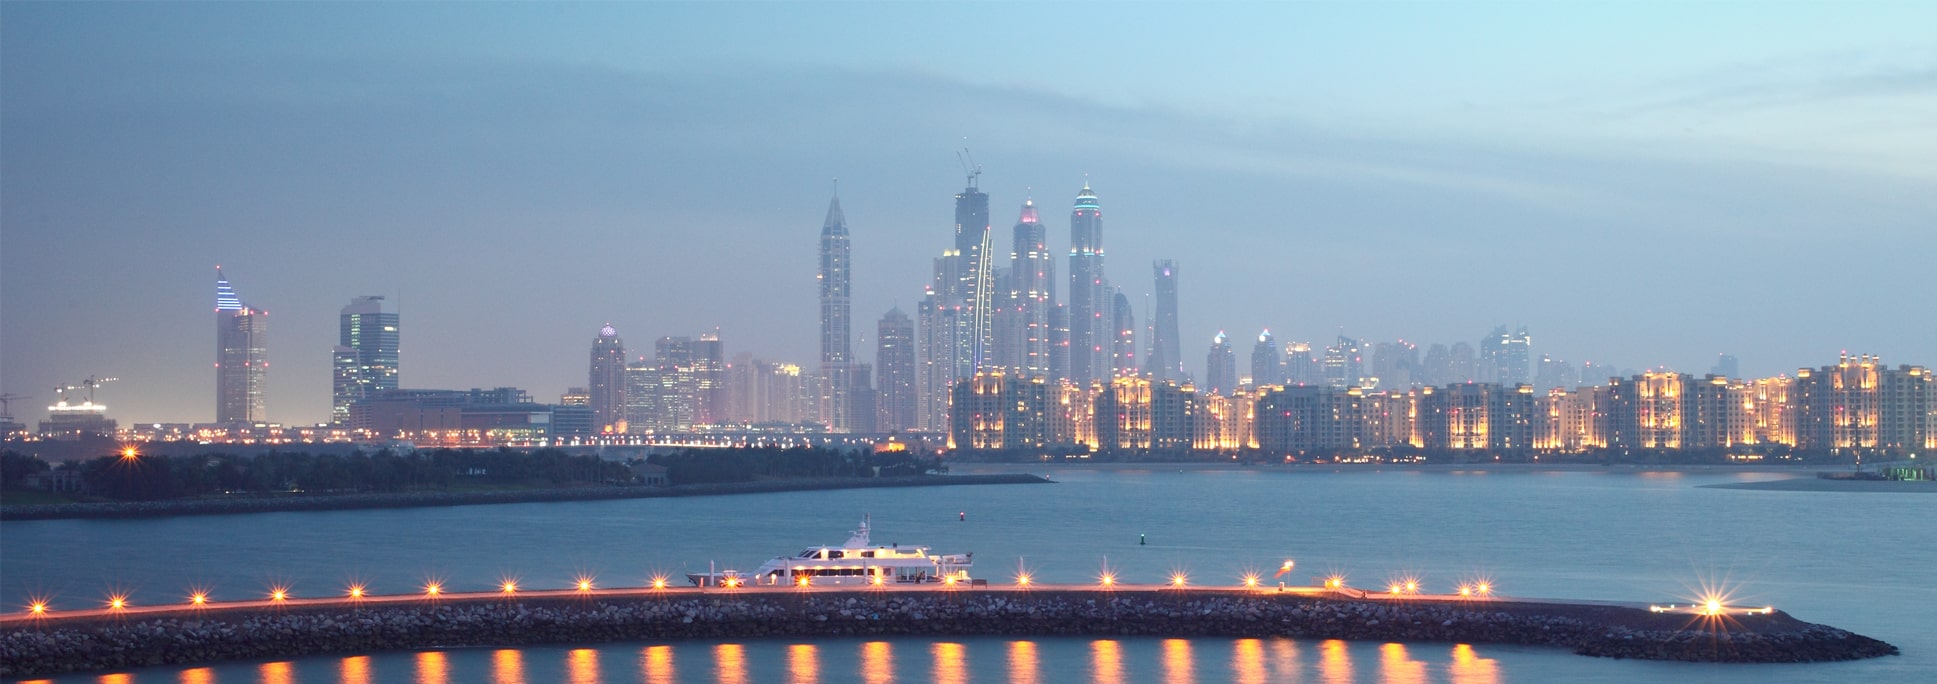 Dubai at Evening